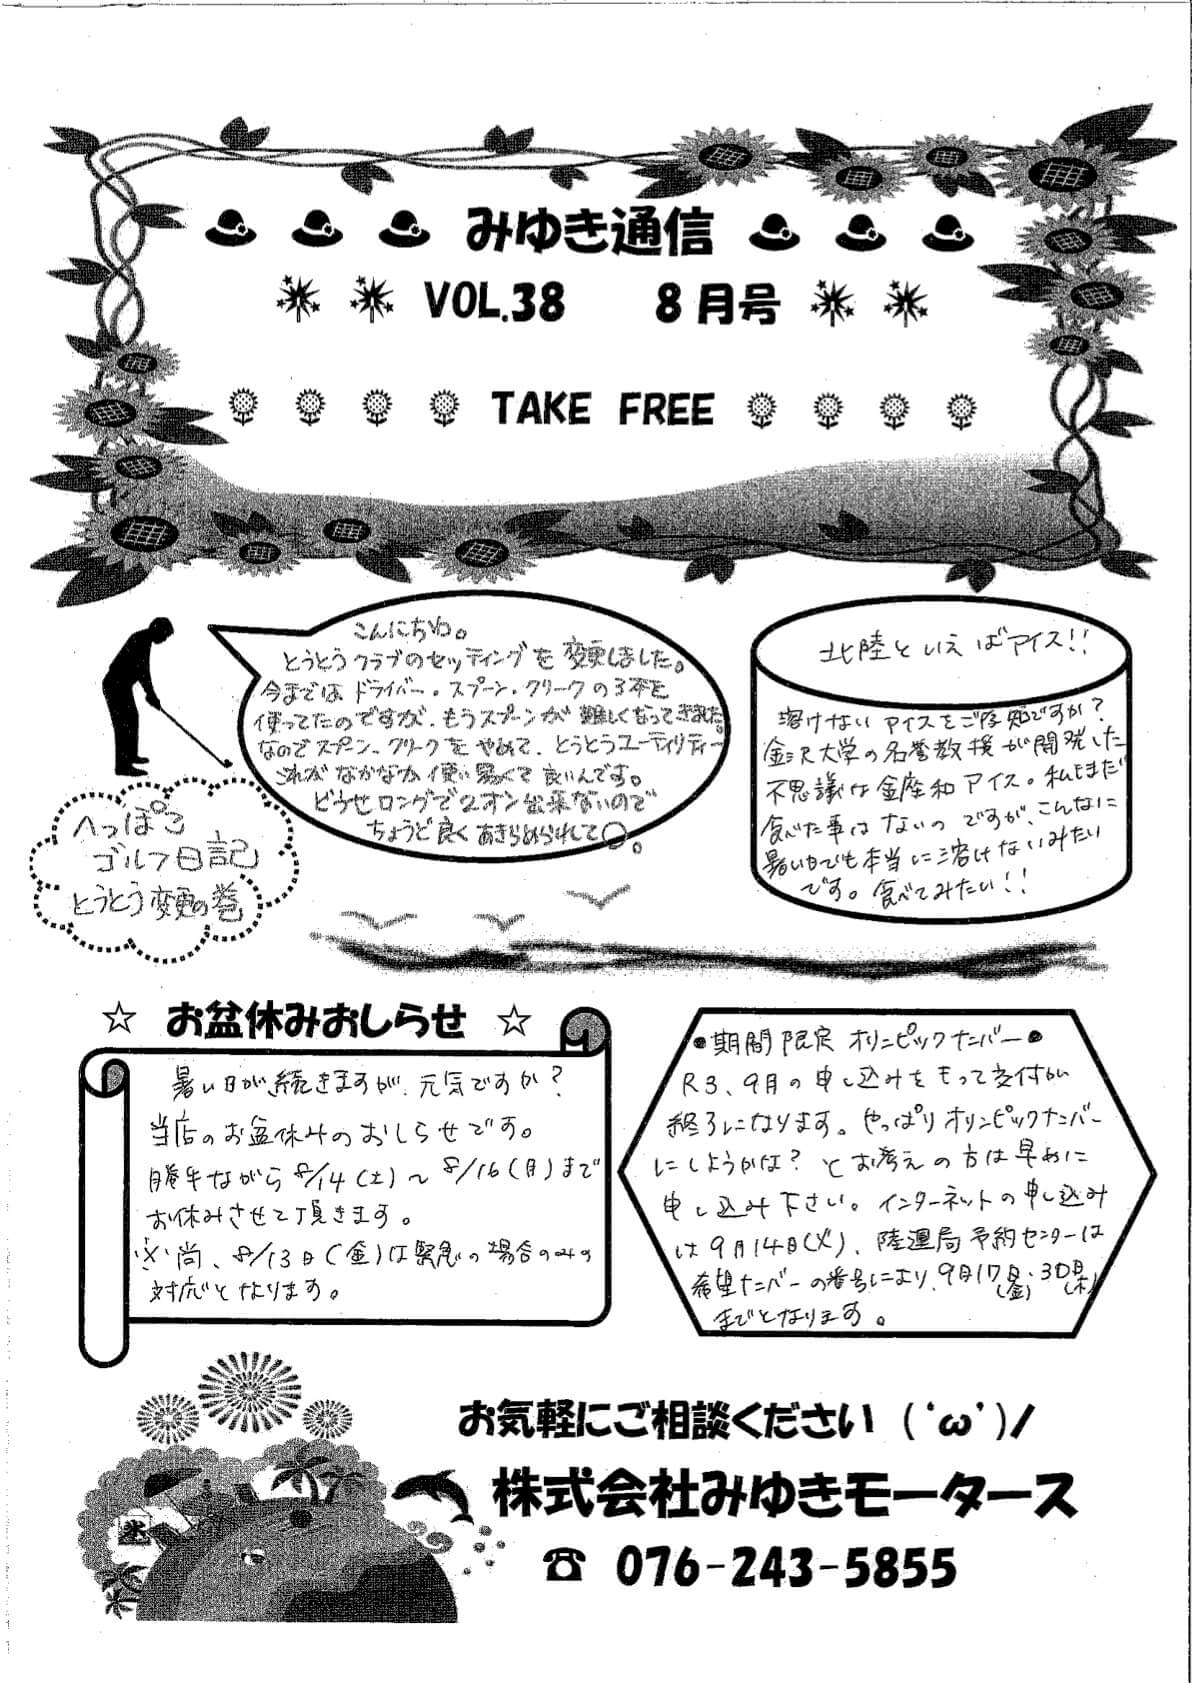 みゆき通信vol.38 8月号